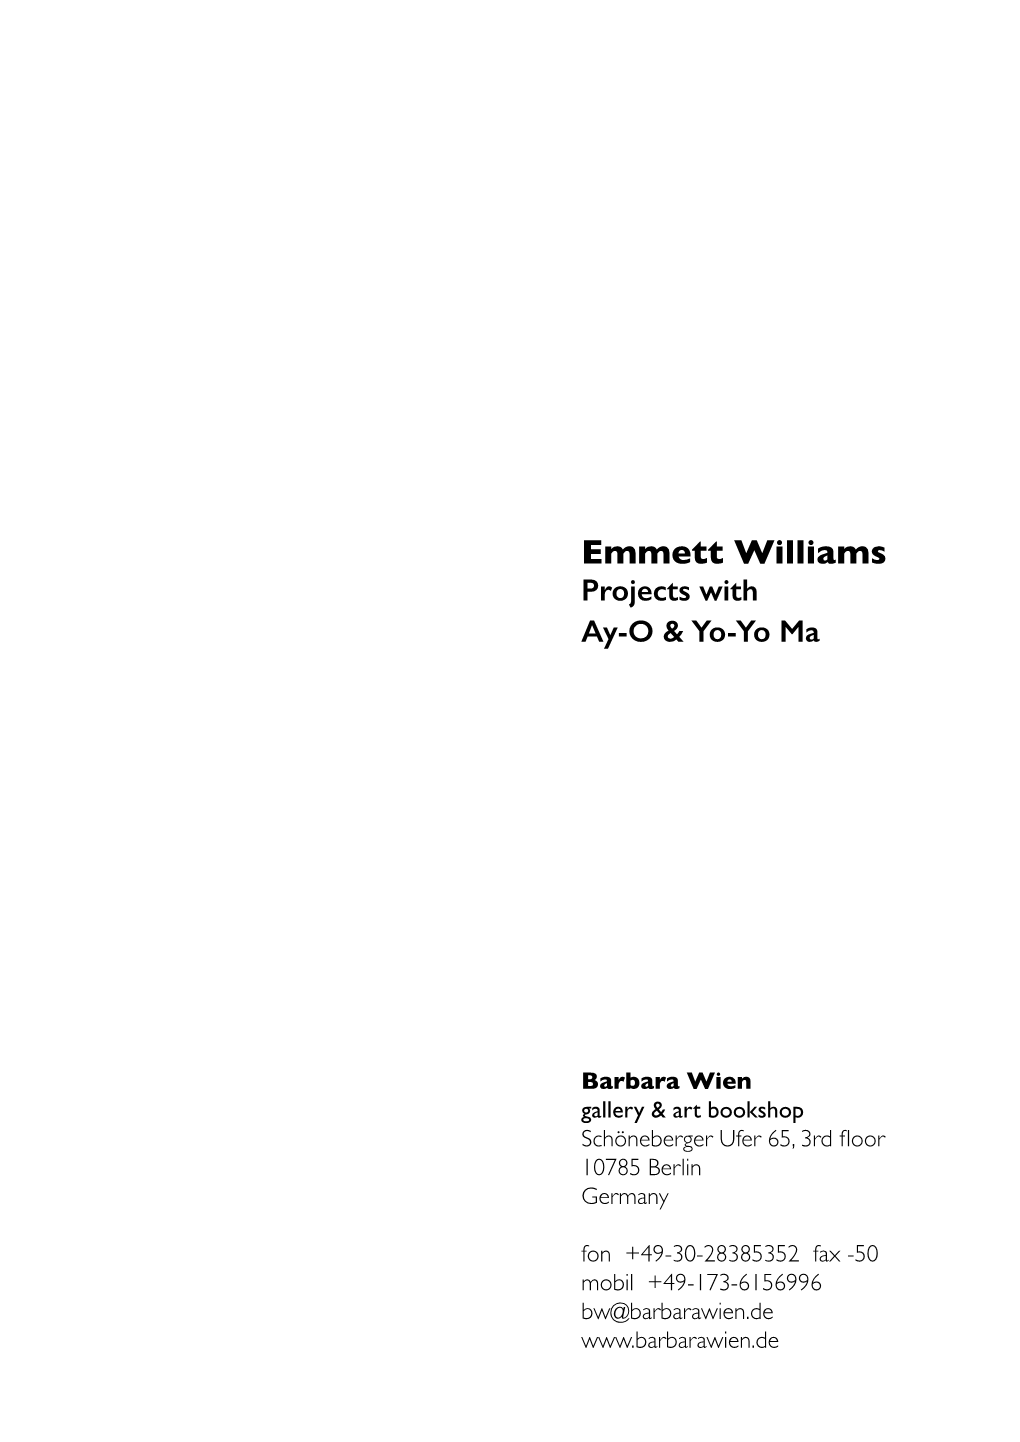 Emmett Williams Projects with Ay-O & Yo-Yo Ma